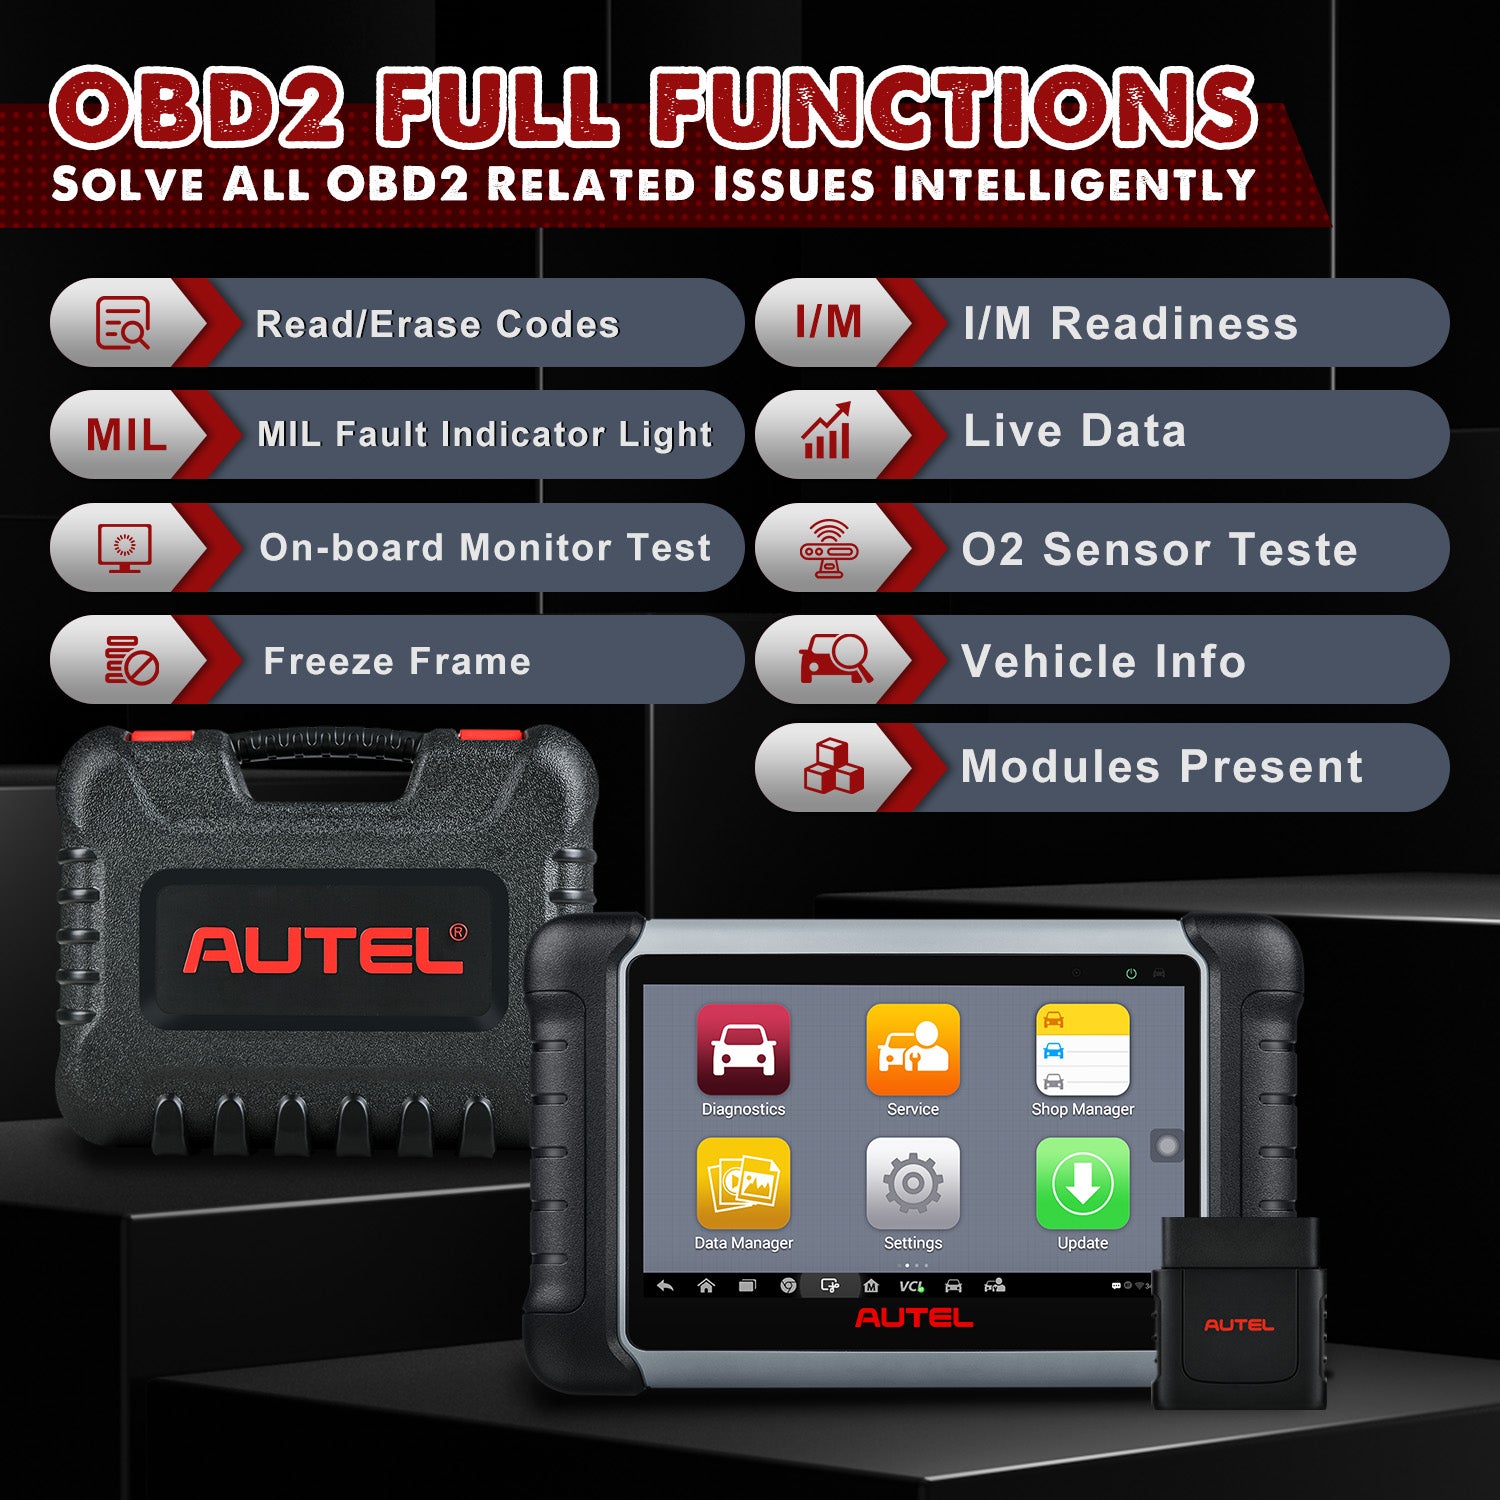 2024 Autel MK808BT PRO (Autel MK808Z-BT) With Free Autel MaxiVideo MV108  Support FCA AutoAuth